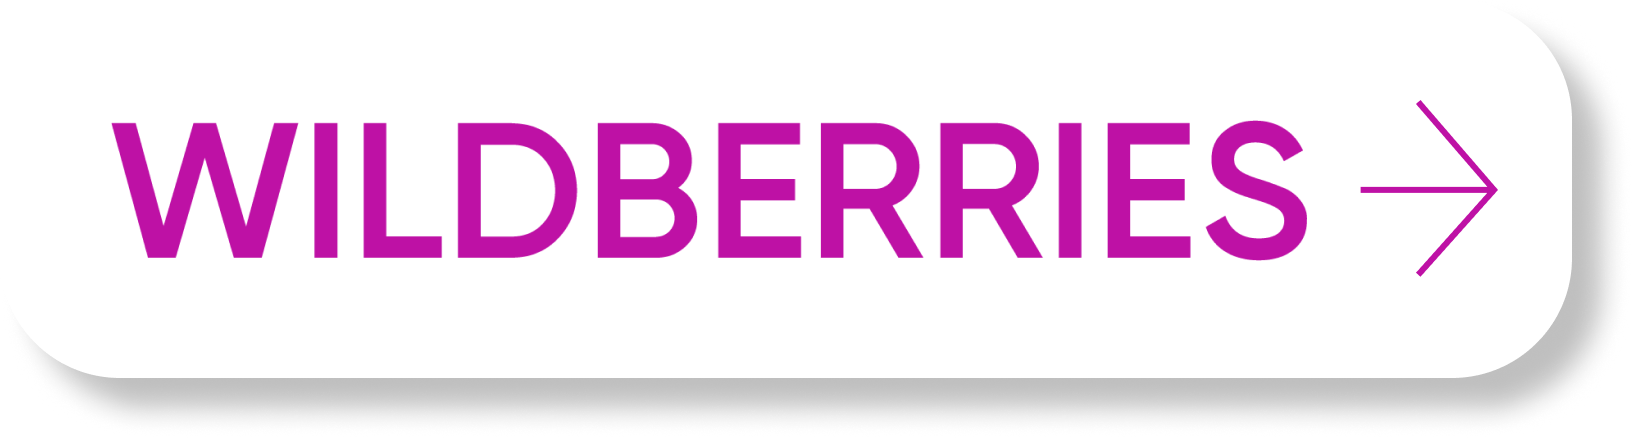 Надпись Wildberries. Wildberries новый логотип. Wildberries логотип без букв. Логотип Wildberries на прозрачном фоне.